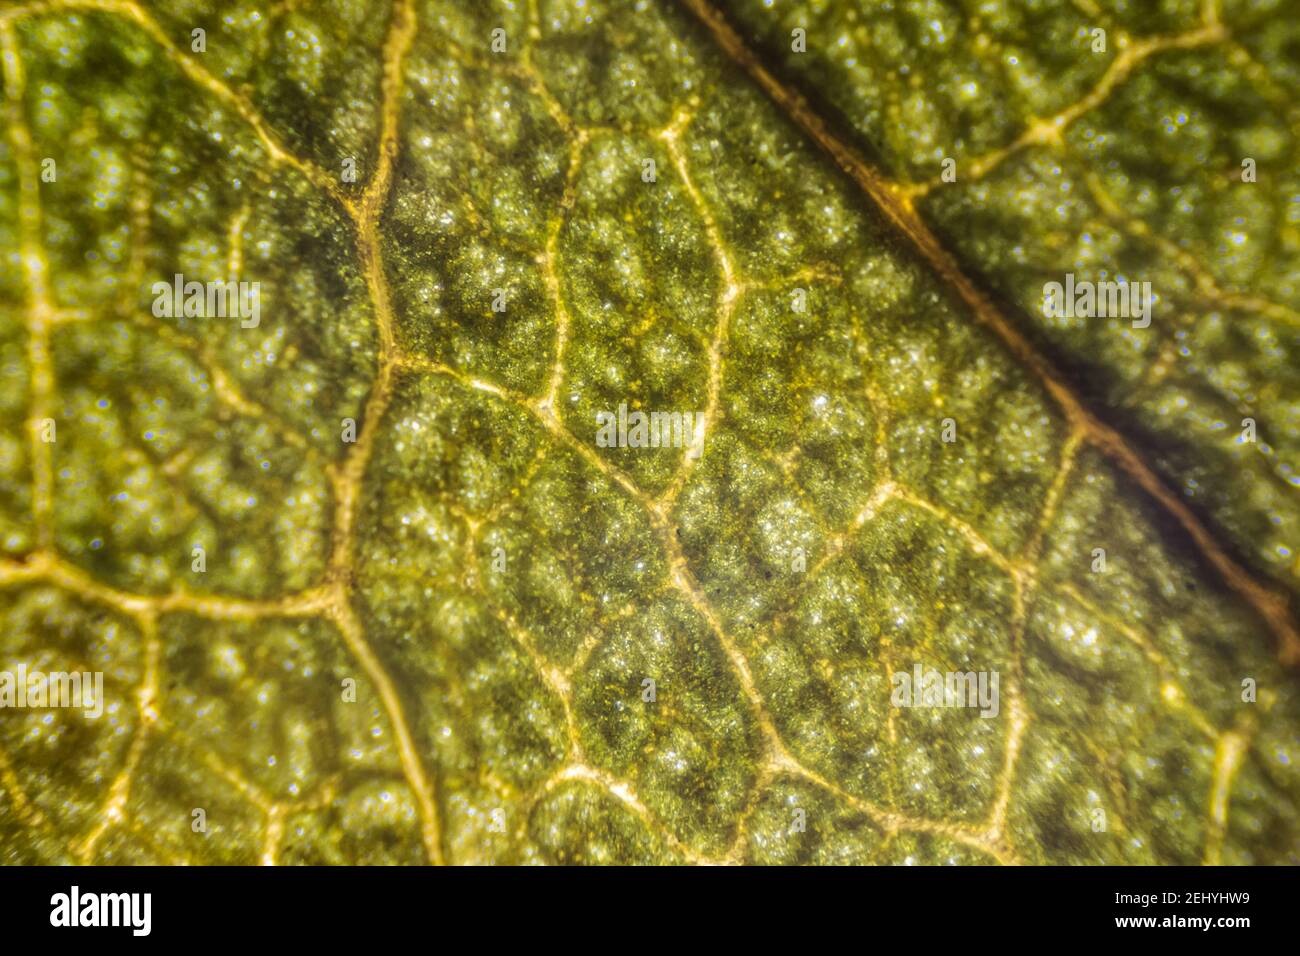 Grünes Rosenblatt Makro, trockenes Blatt unter dem Mikroskop  Stockfotografie - Alamy